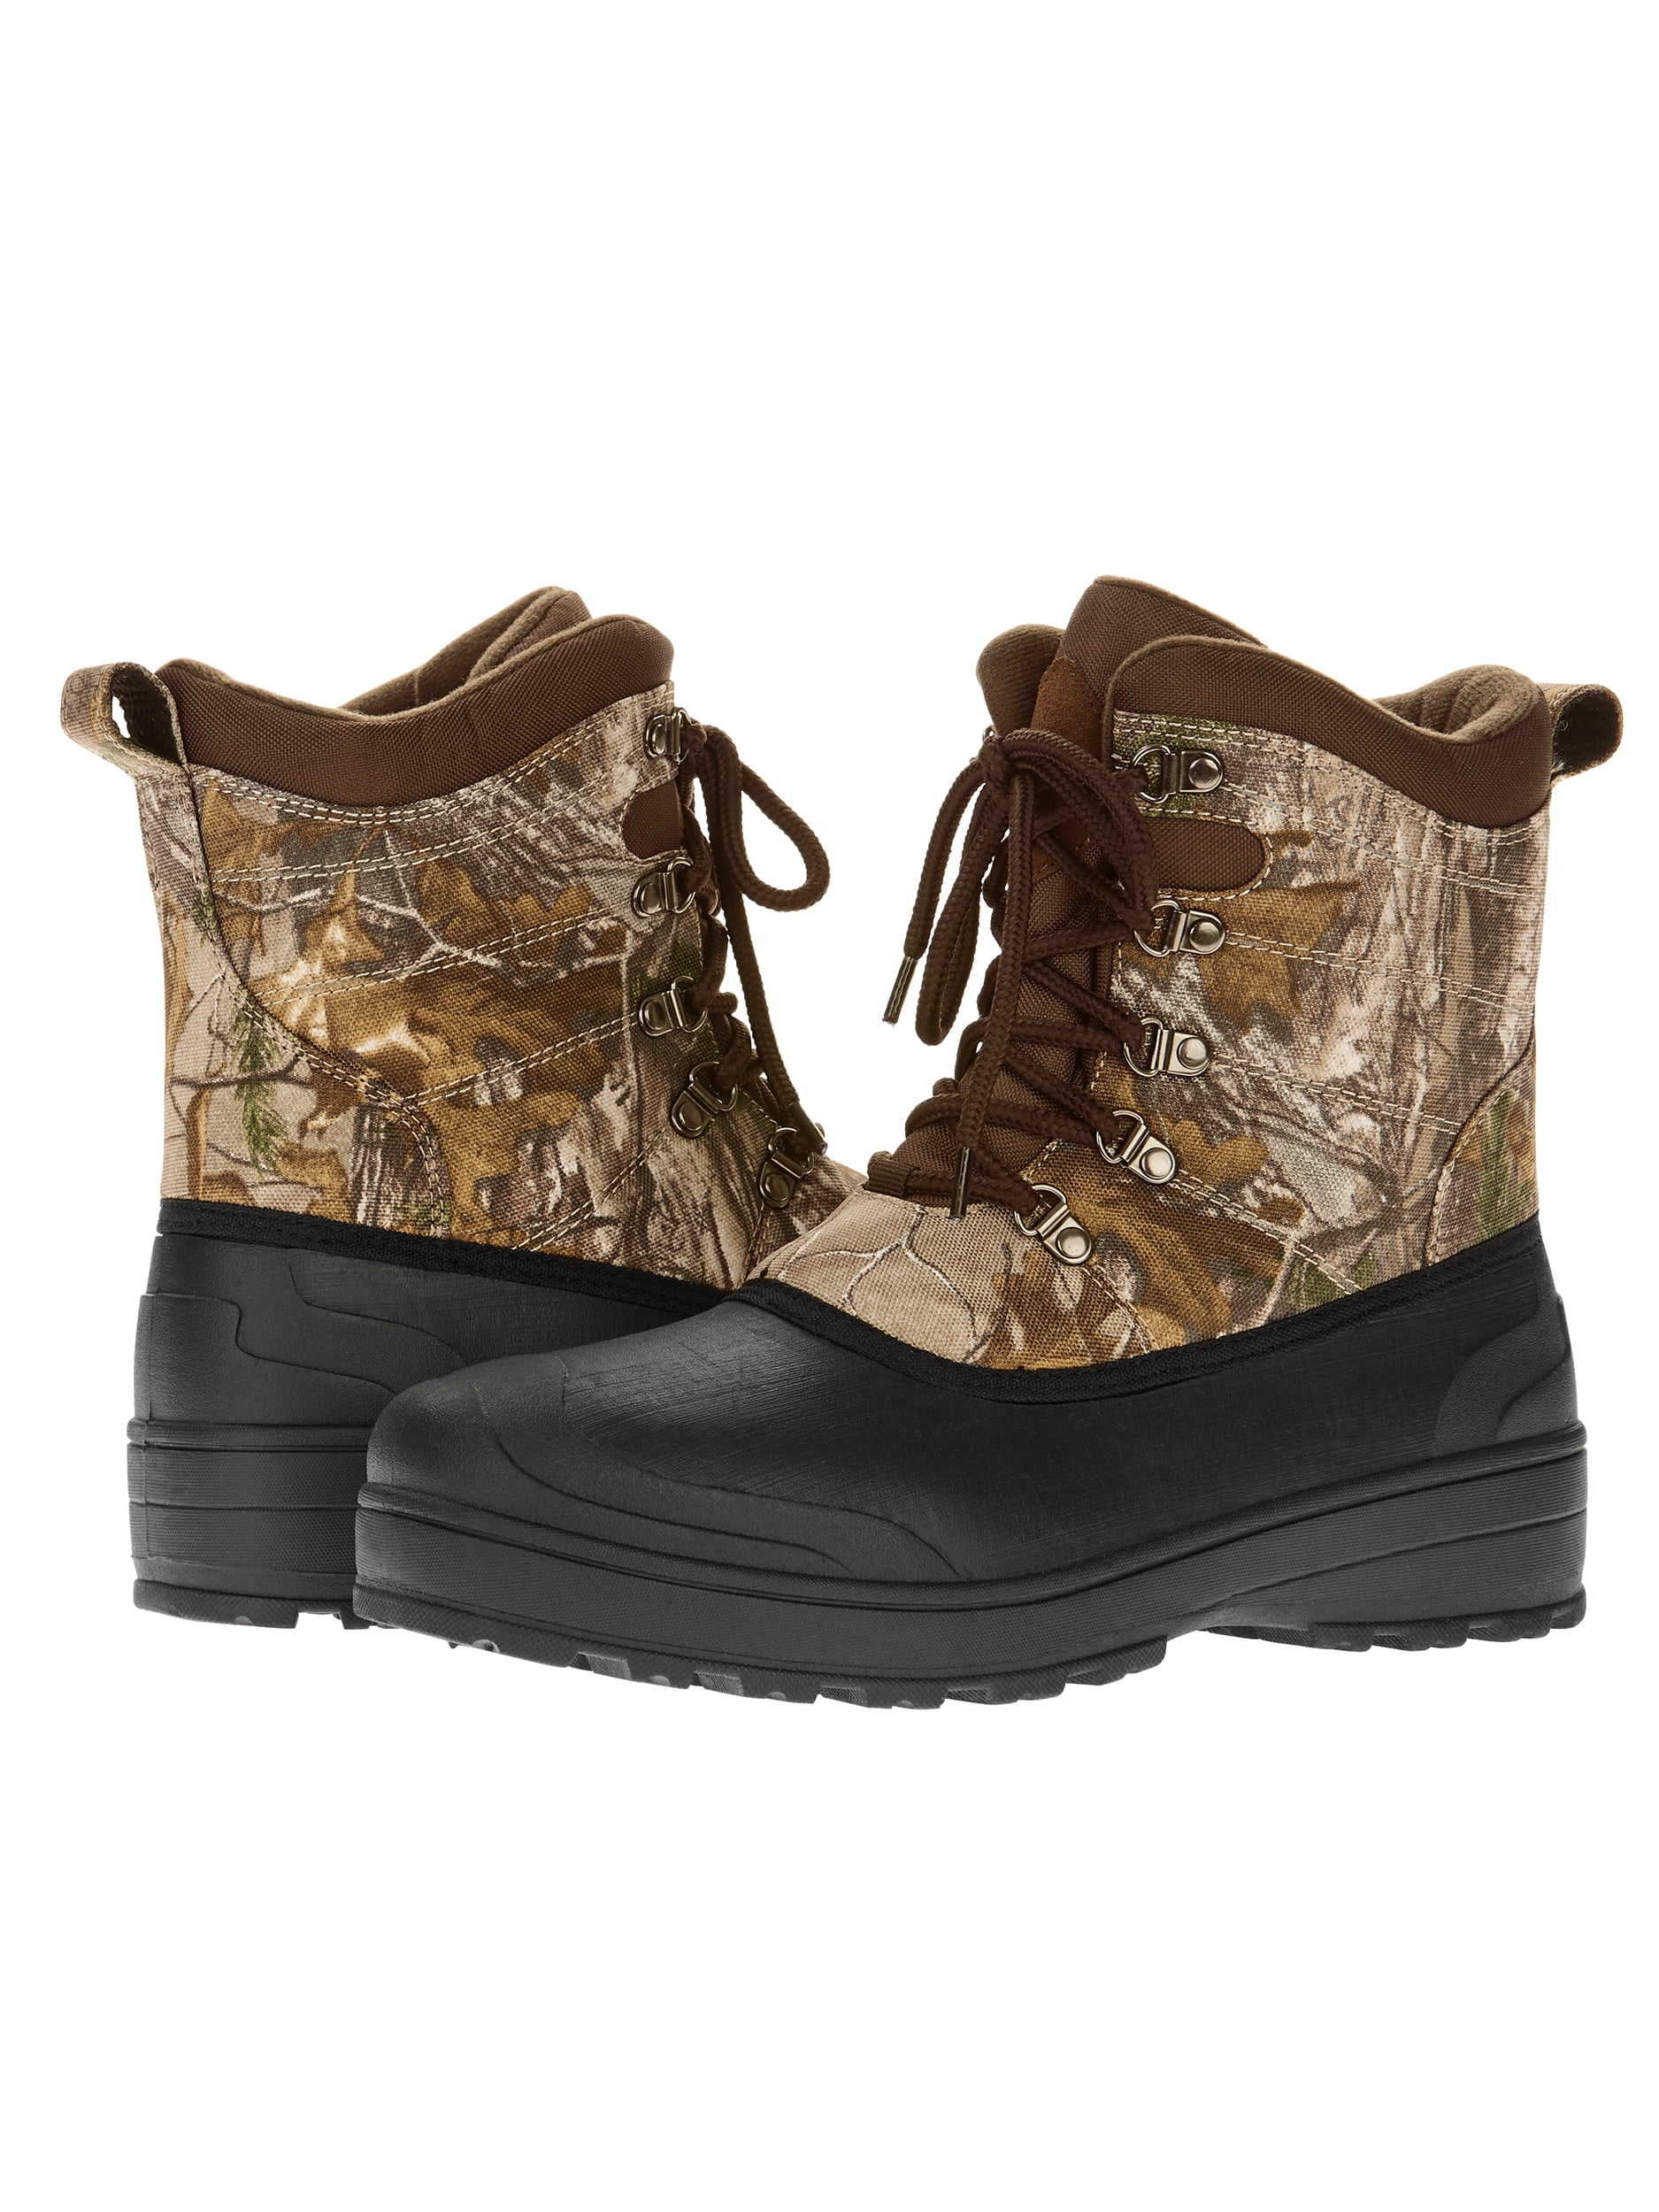 ozark trail camo boots